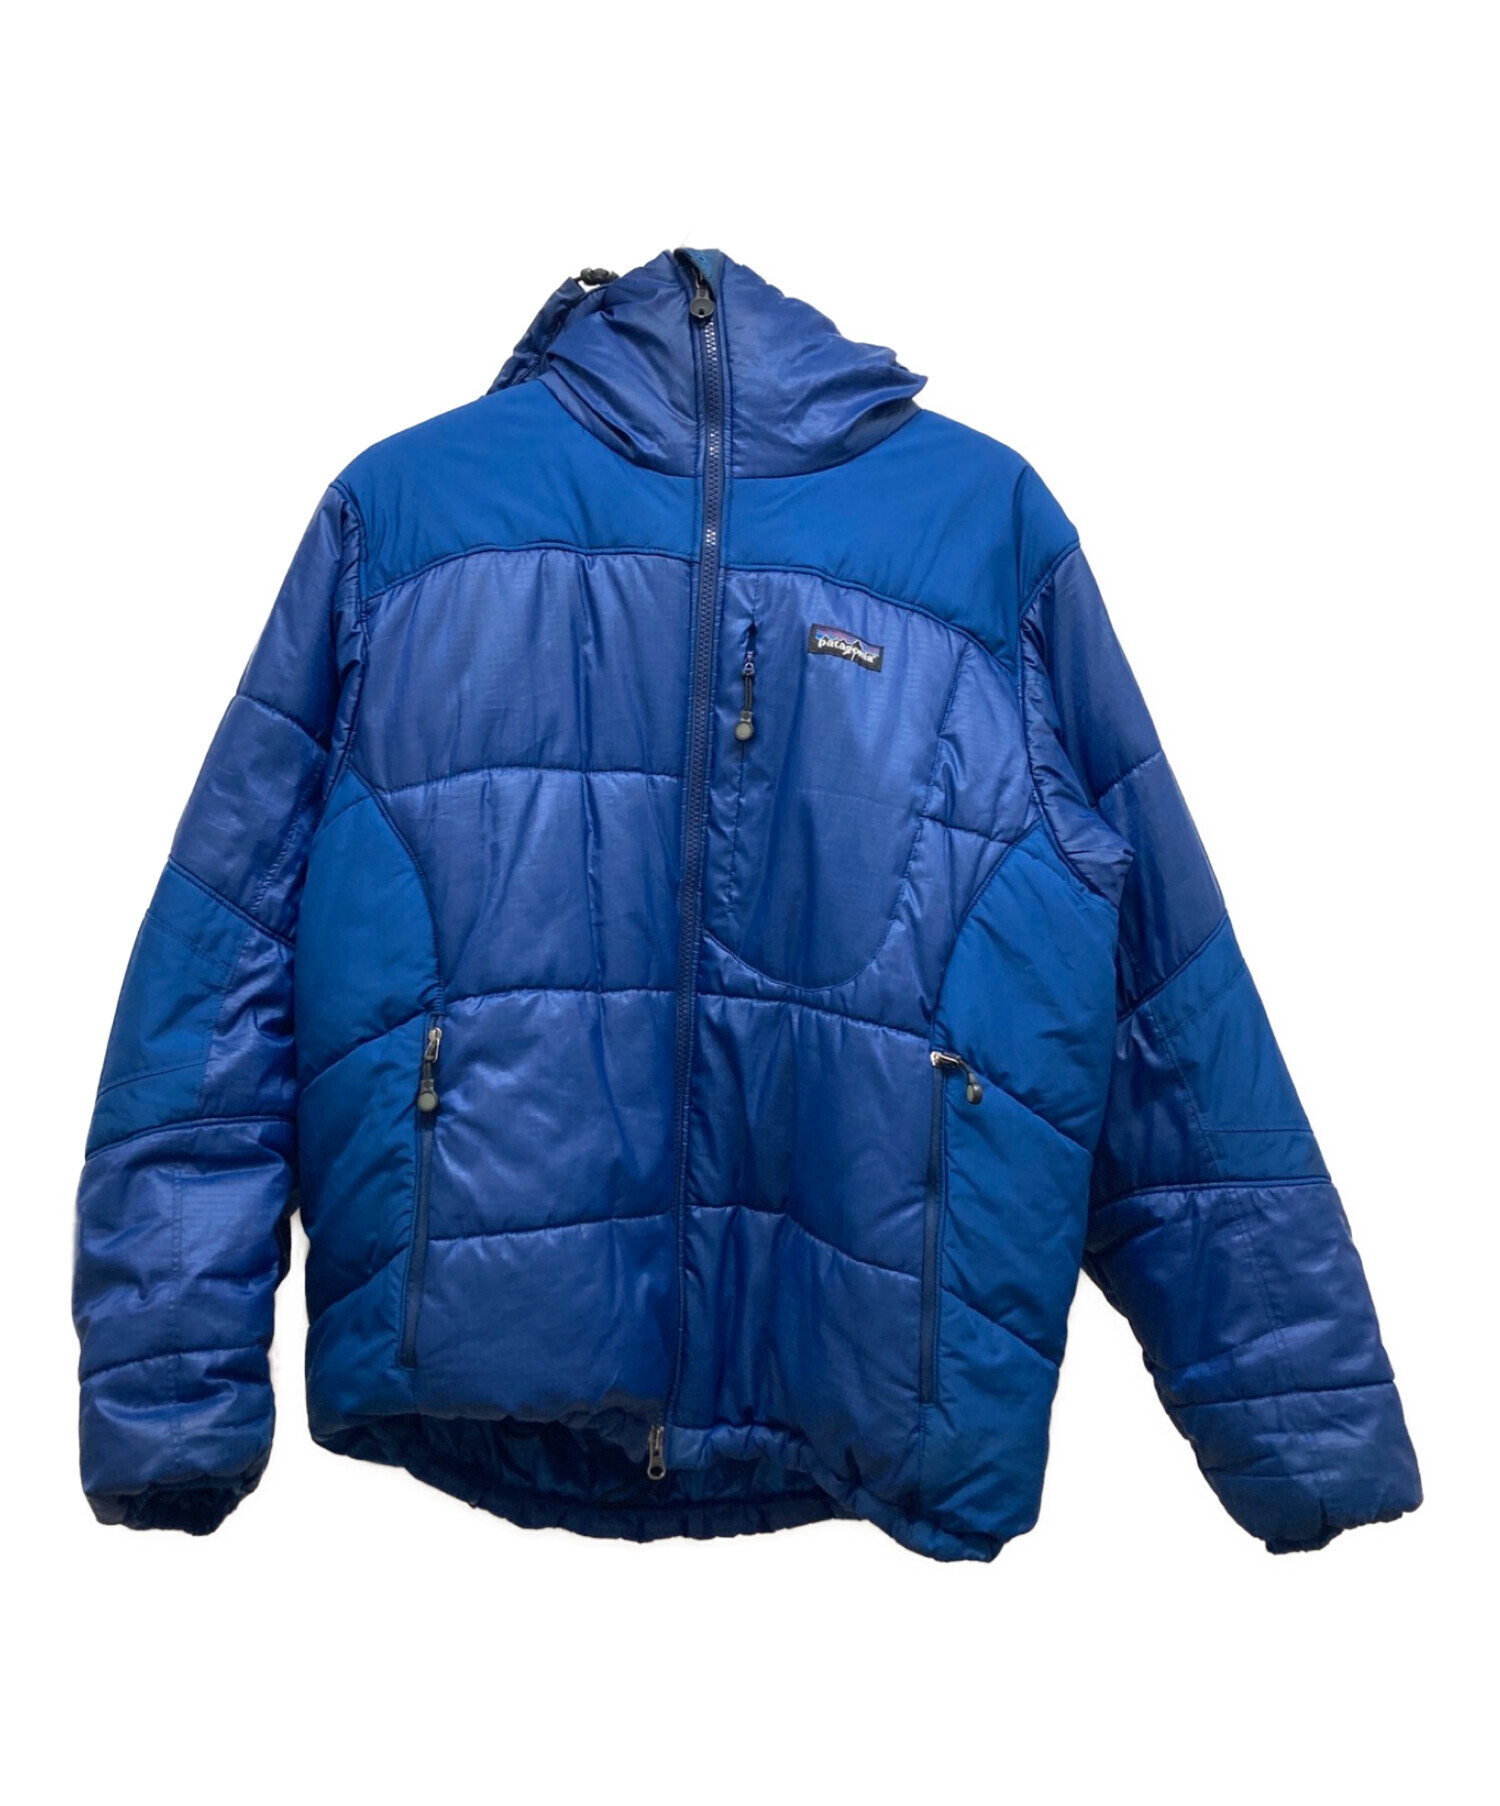 Patagonia (パタゴニア) ダウンジャケット ブルー サイズ:M